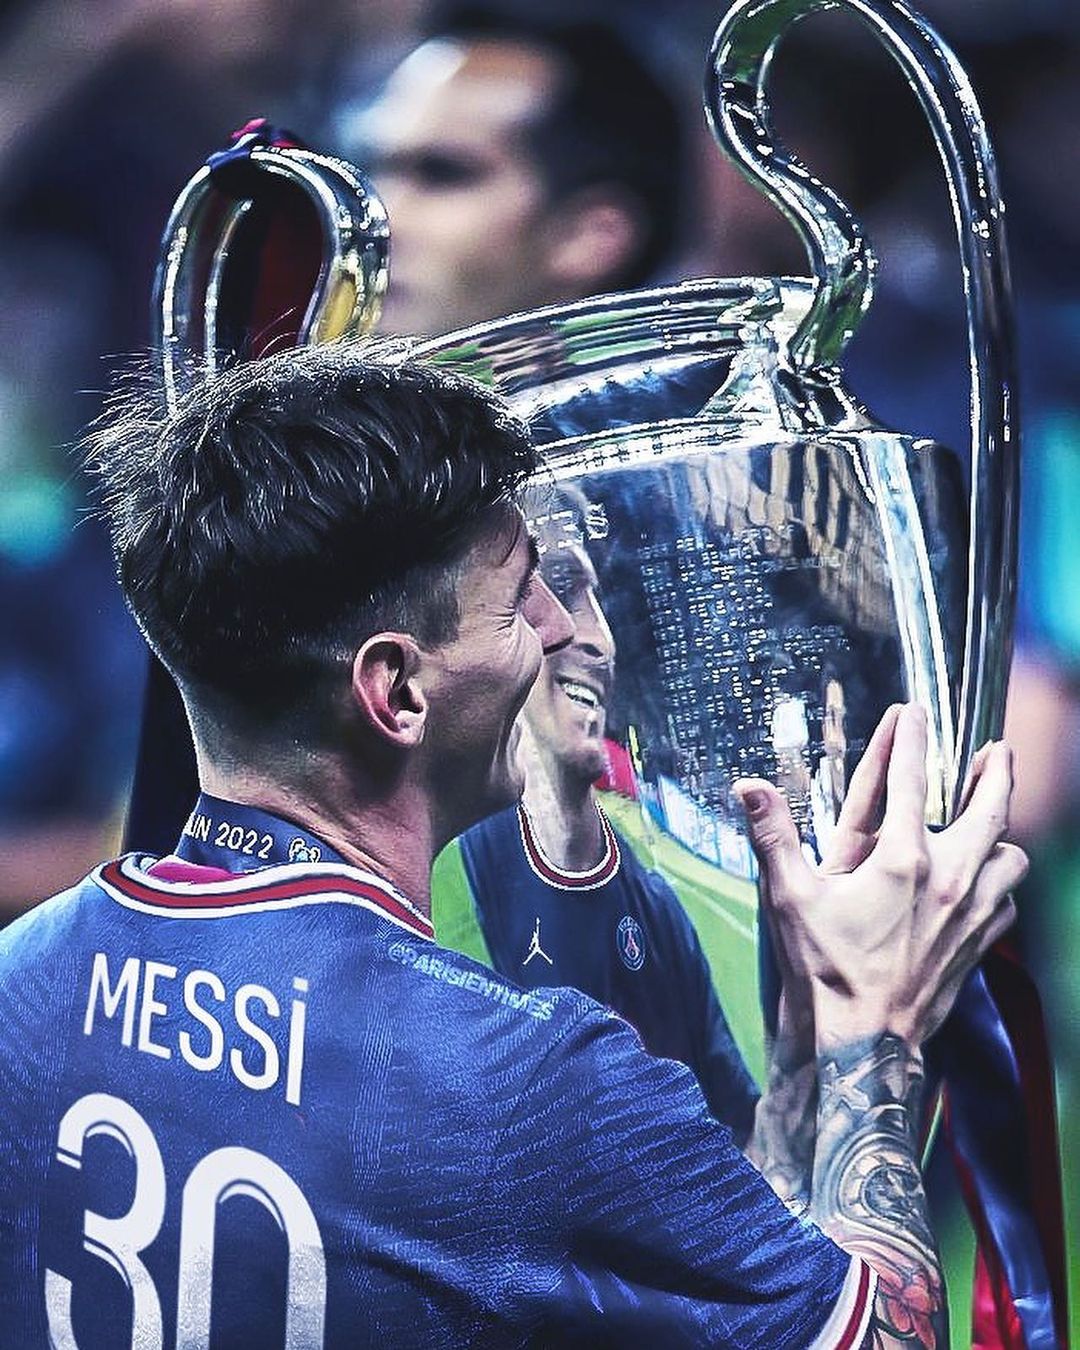 Thiết kế nền tảng 4K cho hình nền Messi sẽ khiến các fan hâm mộ cảm thấy như đang trực tiếp đứng trước huyền thoại bóng đá này. Khám phá chi tiết hình ảnh chất lượng cao và hình nền hoàn hảo để tôn vinh thần tượng của bạn.